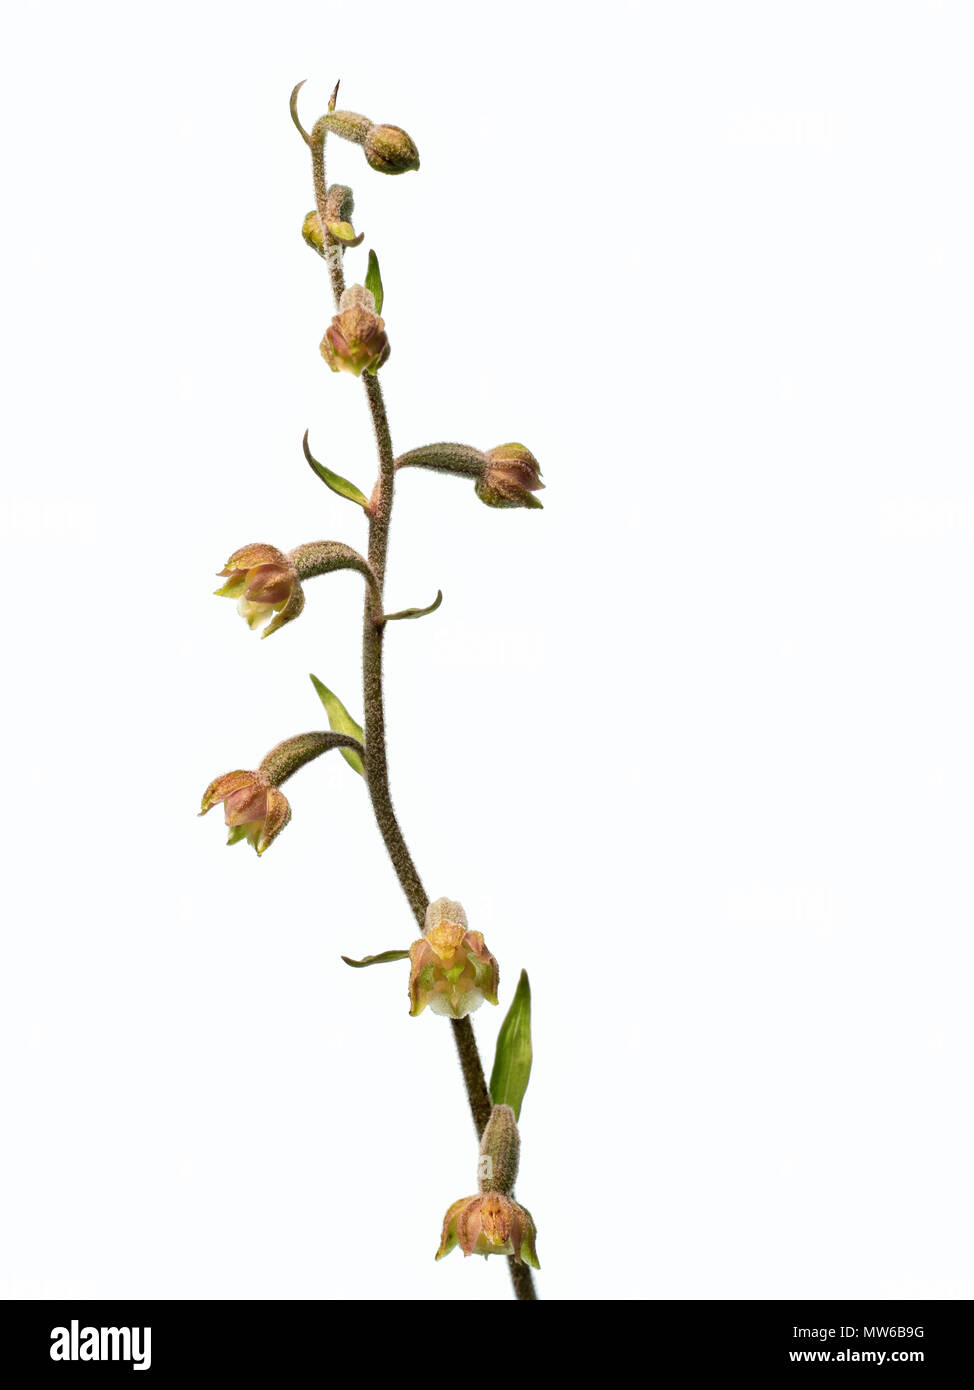 Orquídea salvaje. Epipactis microphylla. Aka-hojeados epipactis diminutos. Cerca de especies amenazadas. Foto de stock